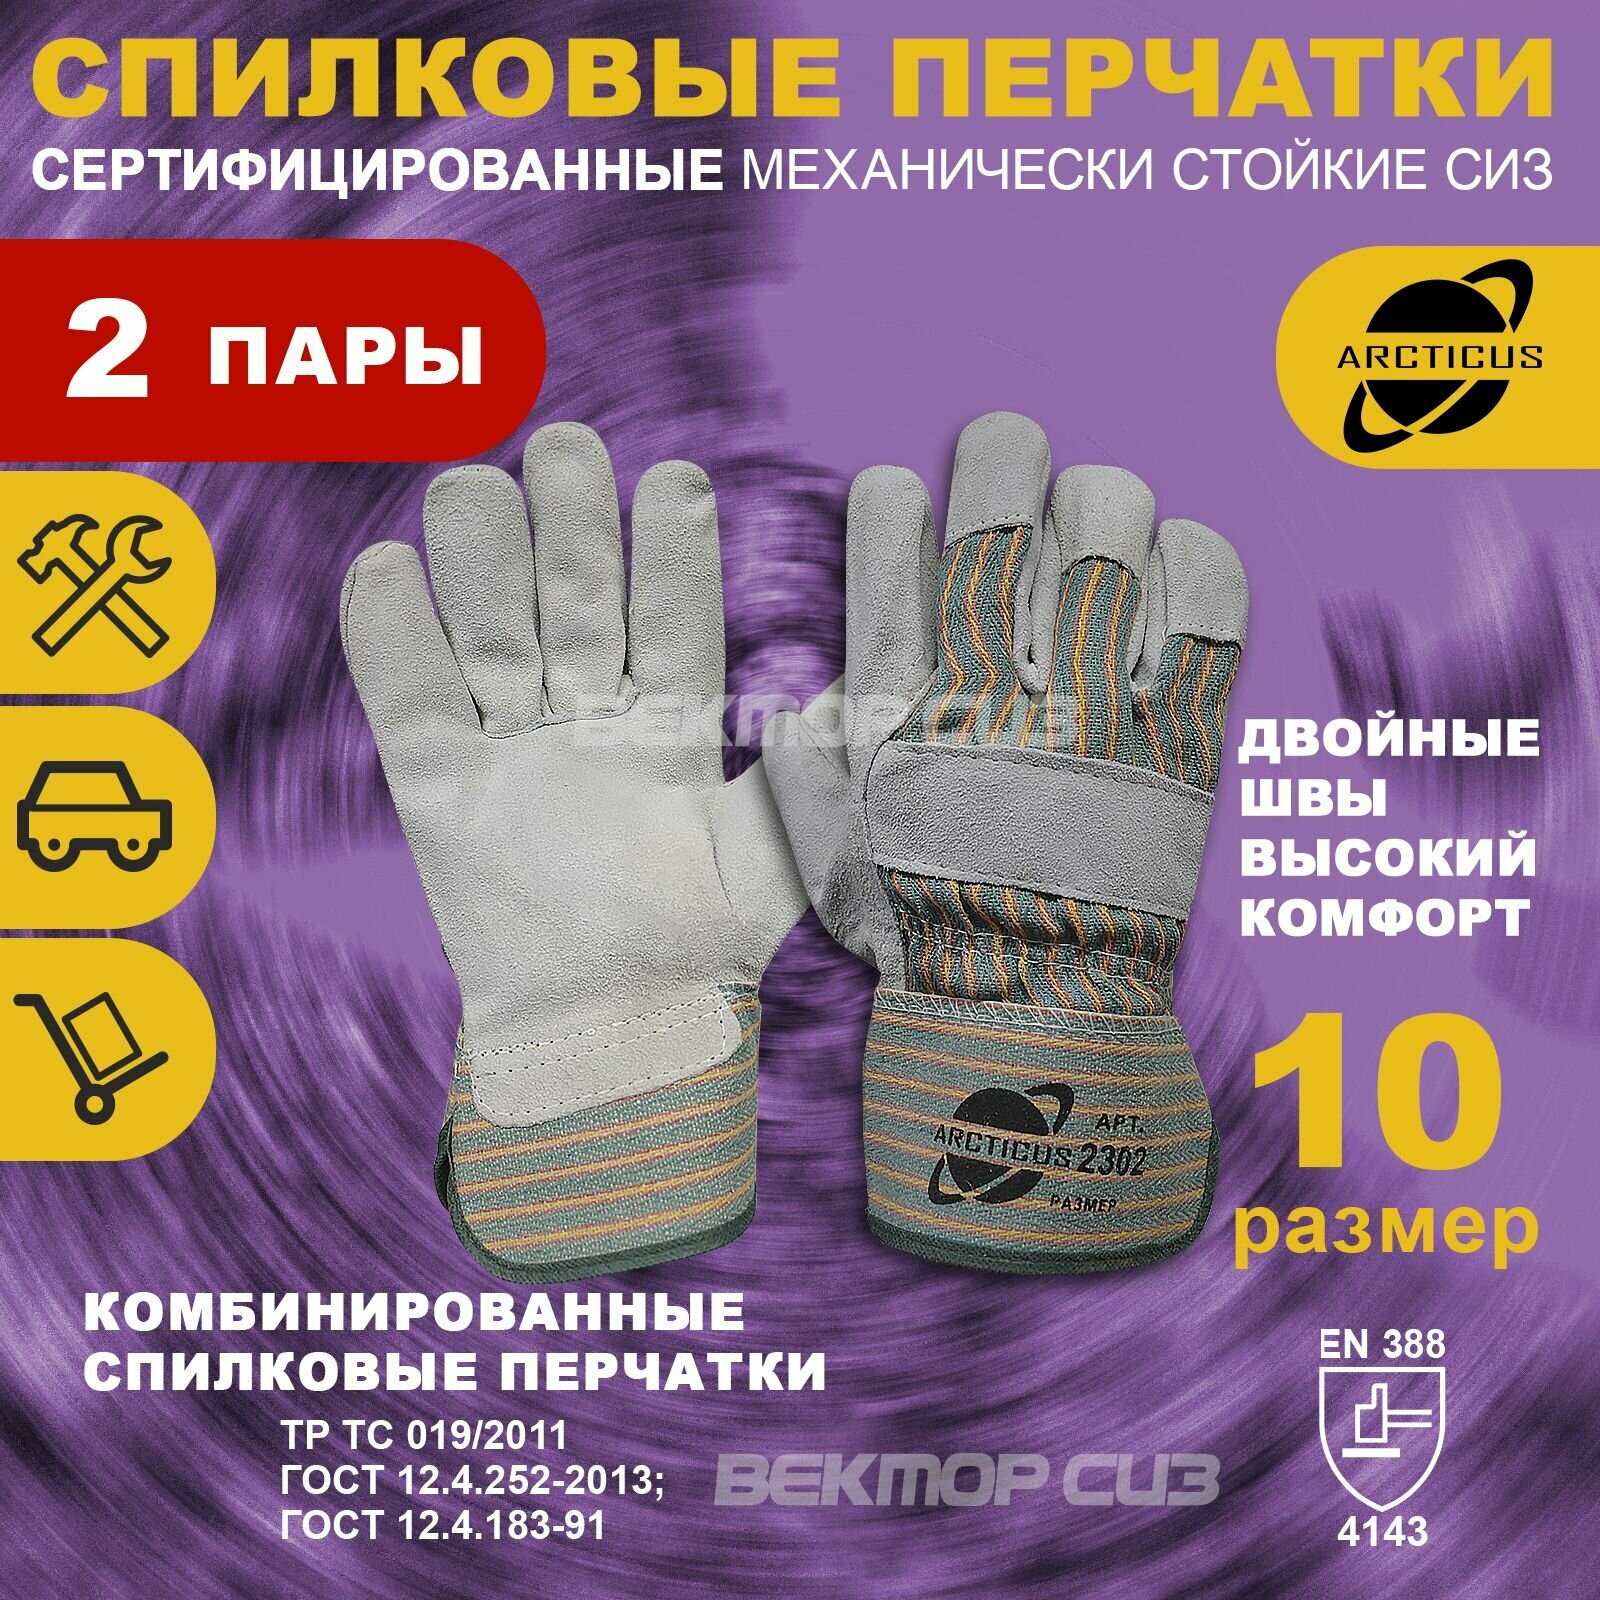 2 пары спилковых перчаток ARCTICUS, арт. 2302, размер 10